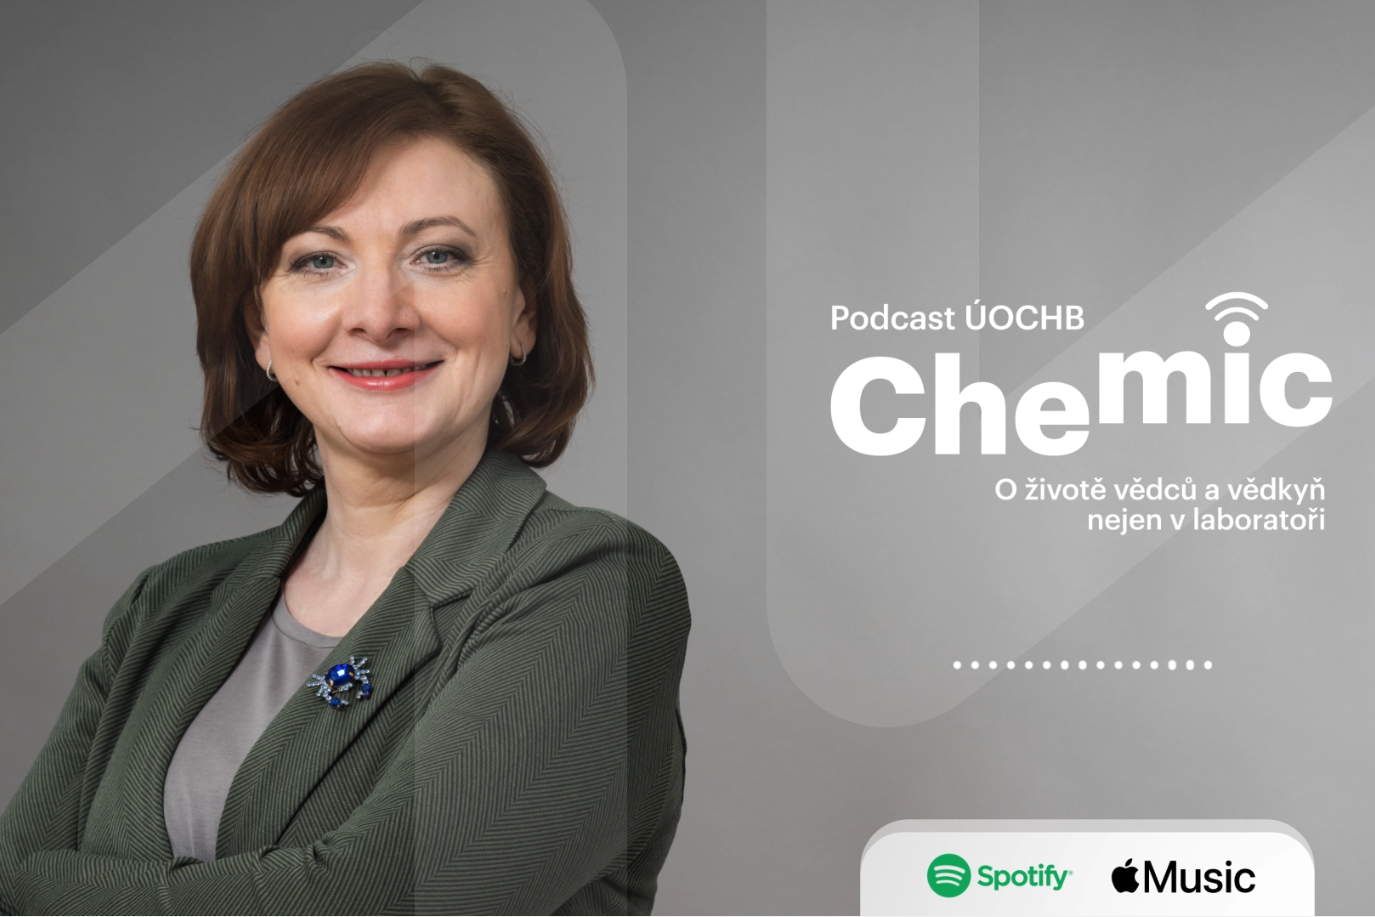 Podcast CHEmic #1 – Riskovat se vyplatí, neúspěchu se nesmíme bát, říká ředitel ÚOCHB Jan Konvalinka